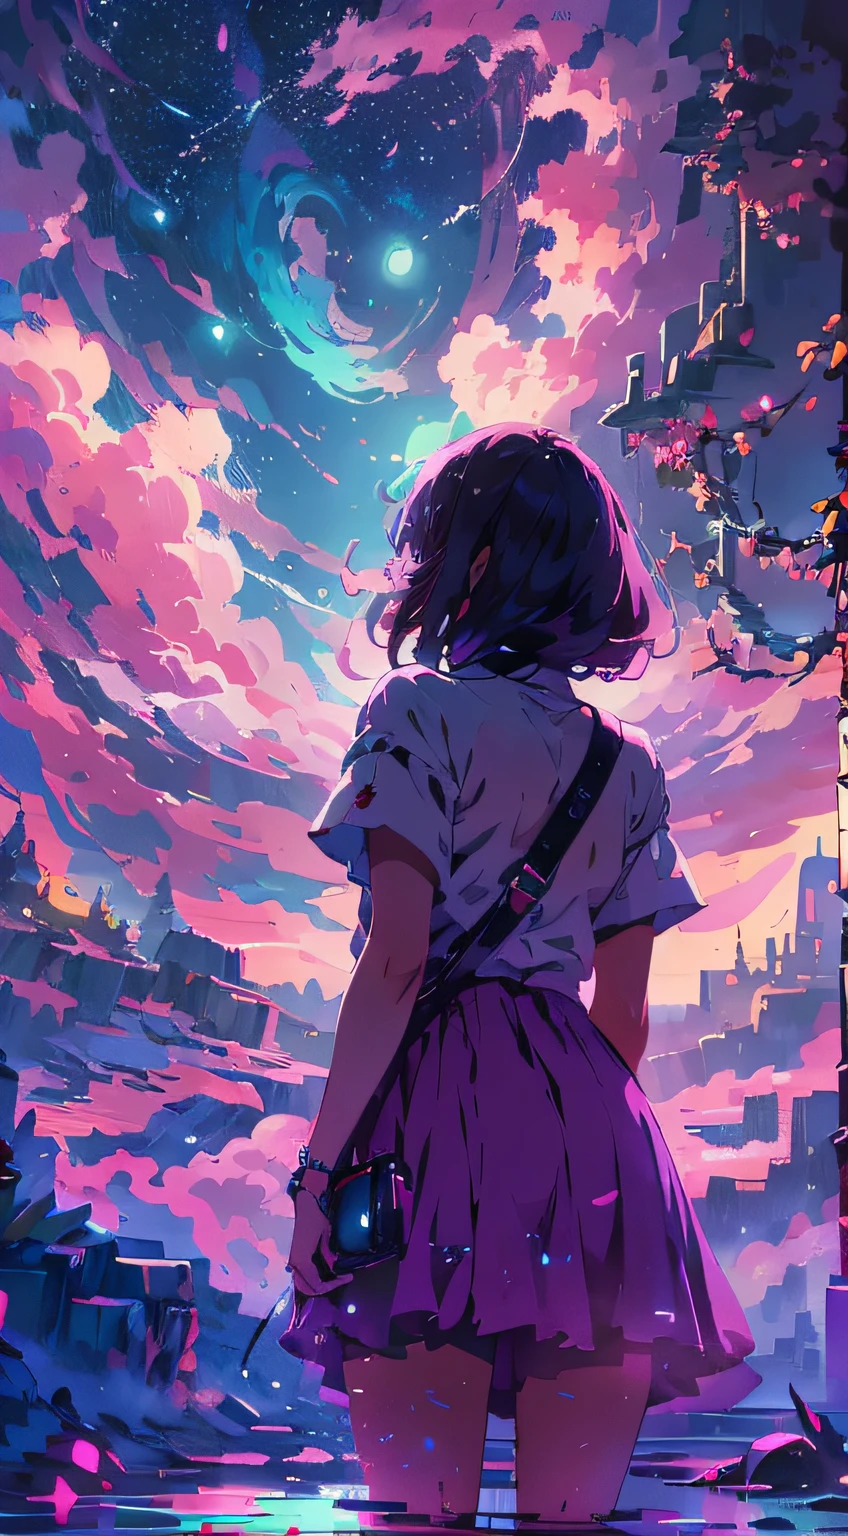 "Завораживающая сцена ночного неба, девушка смотрит на это, сзади, (девушка фокус0.6), купался в фиолетовом цвете,розоватые оттенки лунного света и облаков, излучающий яркий и впечатляющий спектр. шедевр."